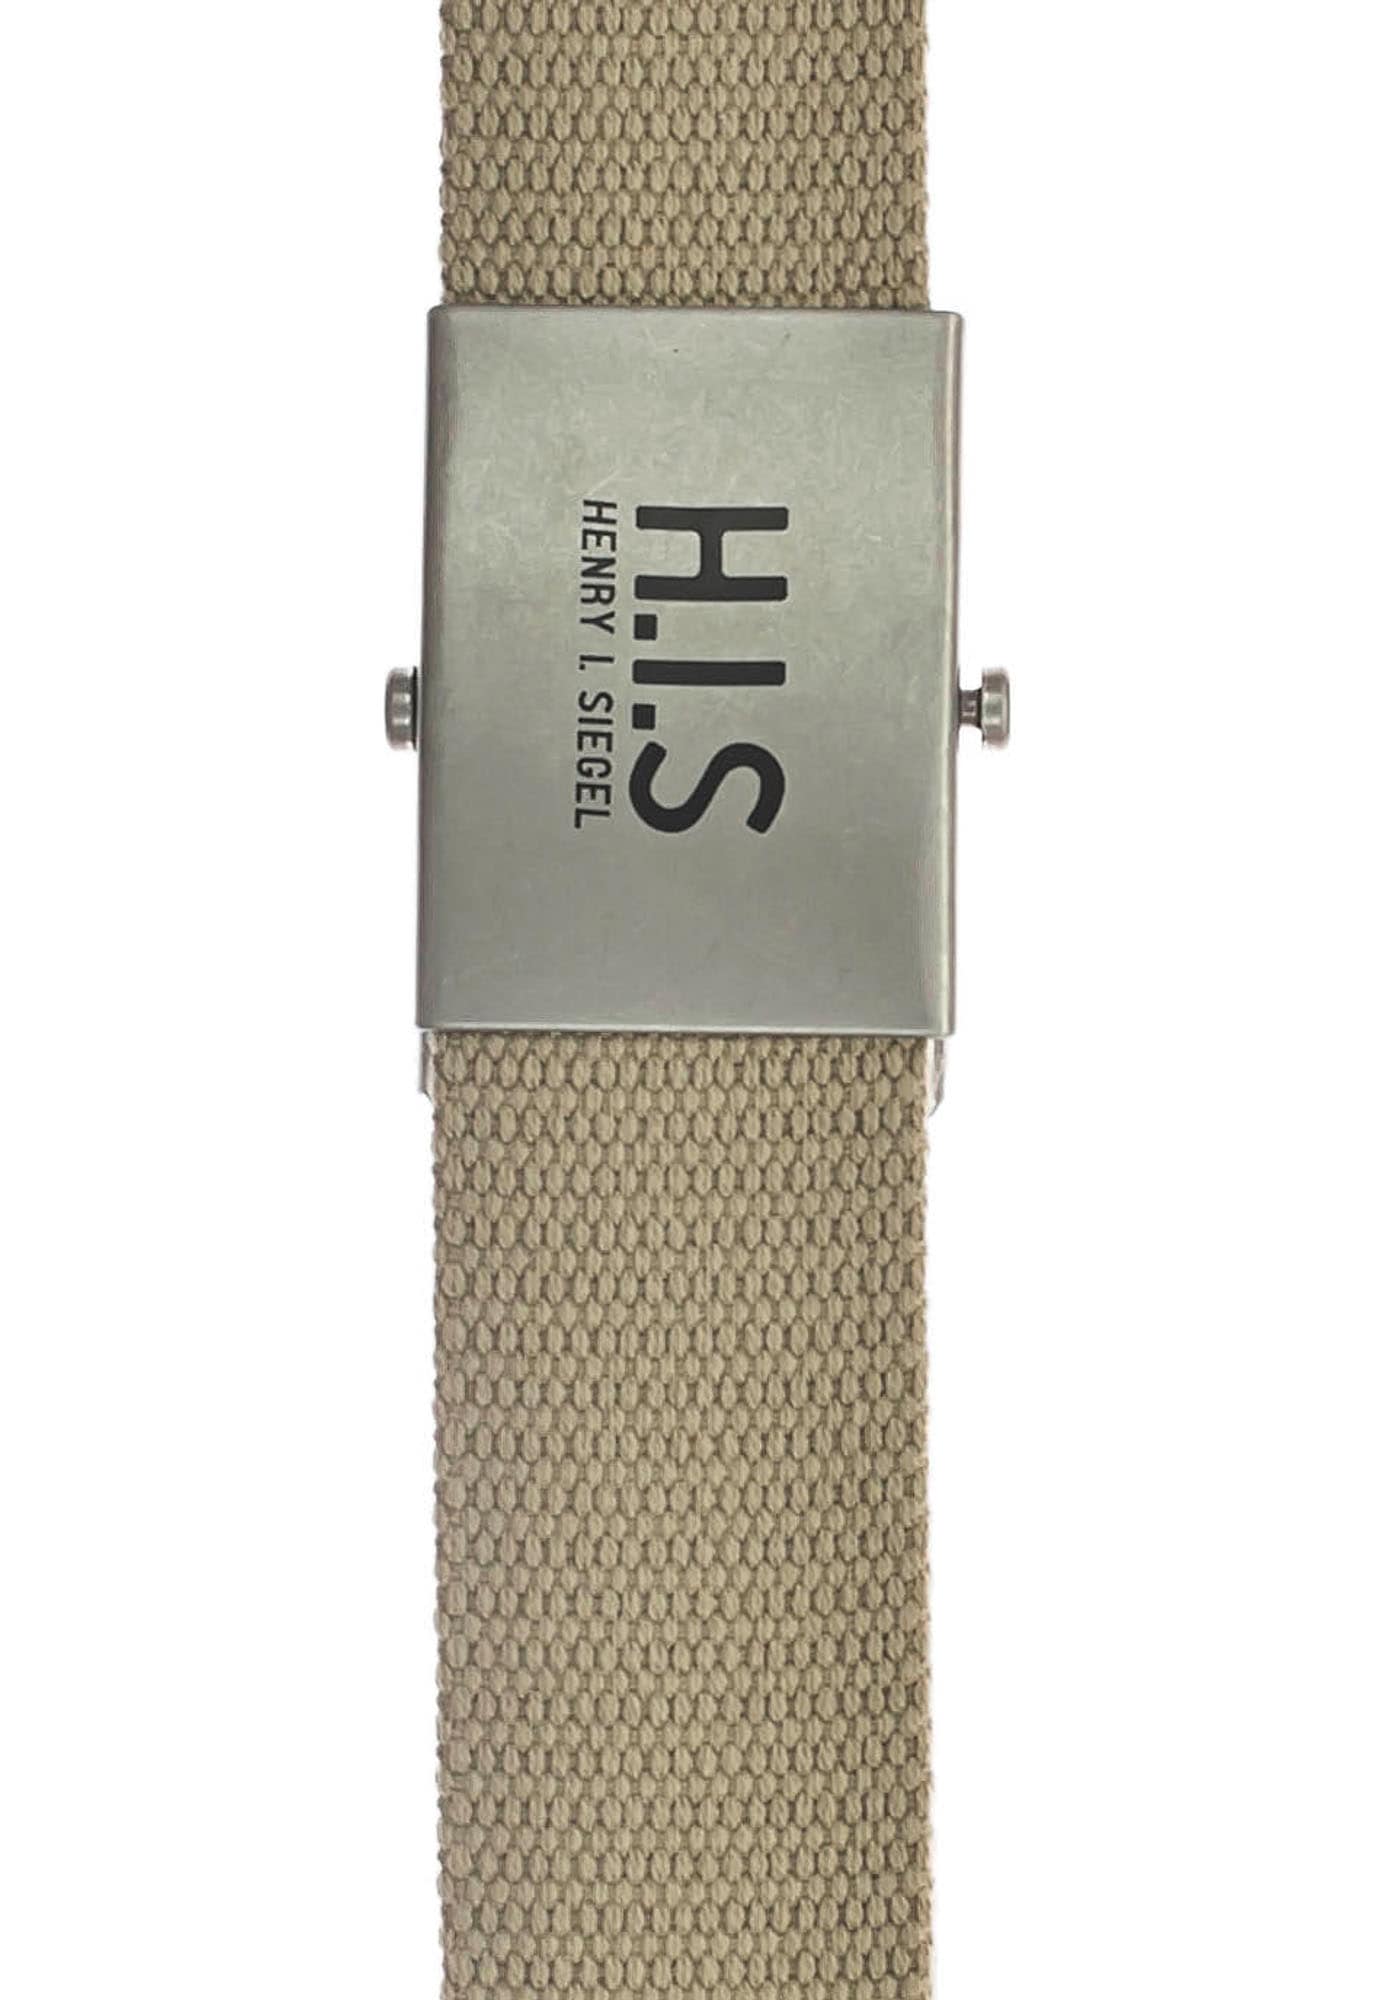 H.I.S Stoffgürtel, Bandgürtel mit H.I.S Logo auf der Koppelschließe